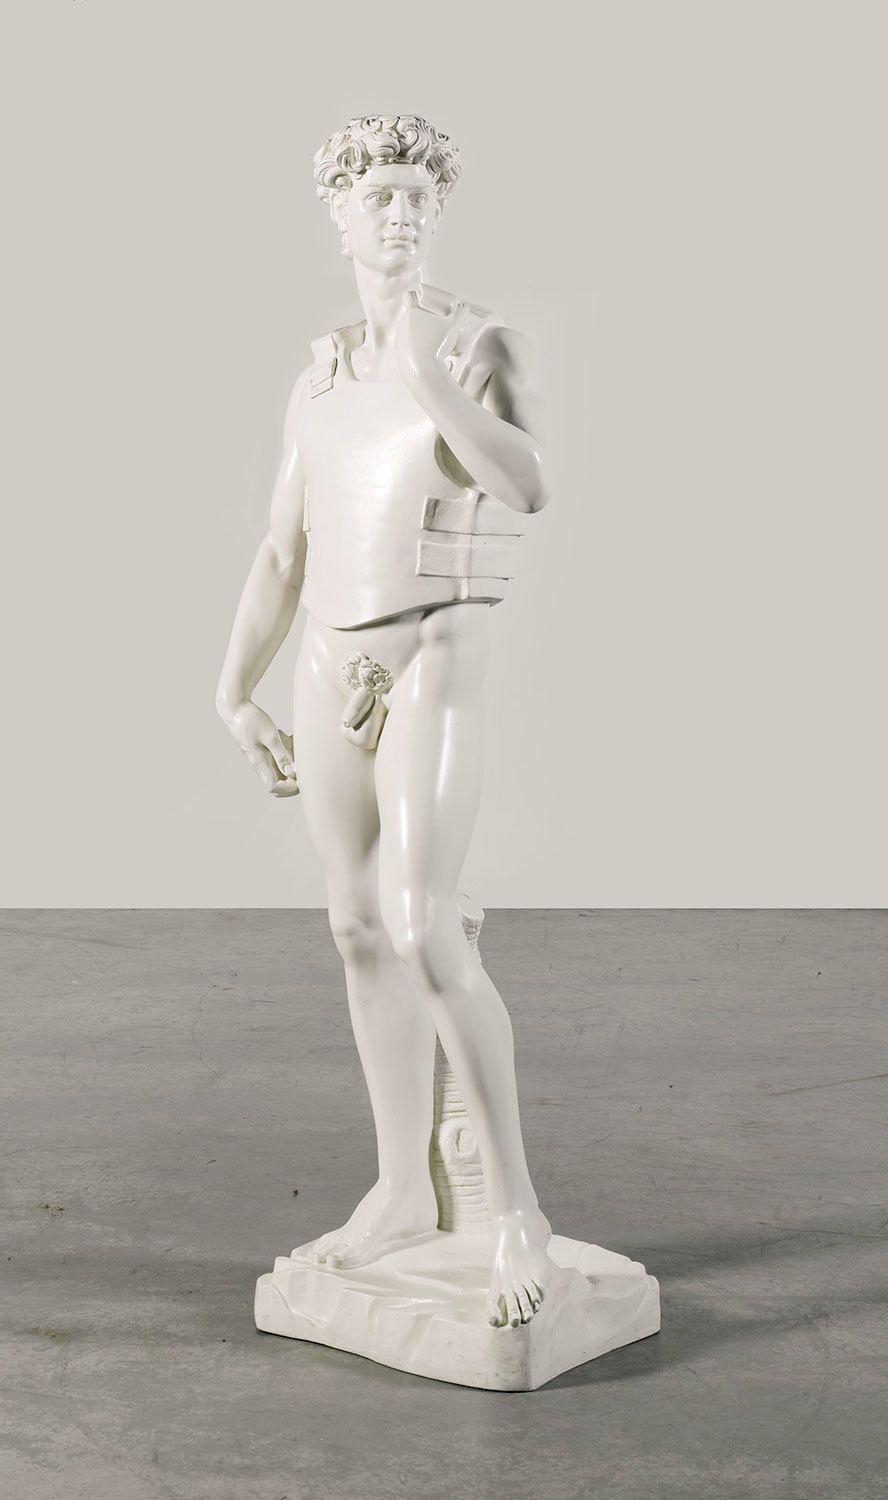 Human, Shoulder, Human leg, Sculpture, Standing, Waist, Chest, Knee, Trunk, Classical sculpture, 